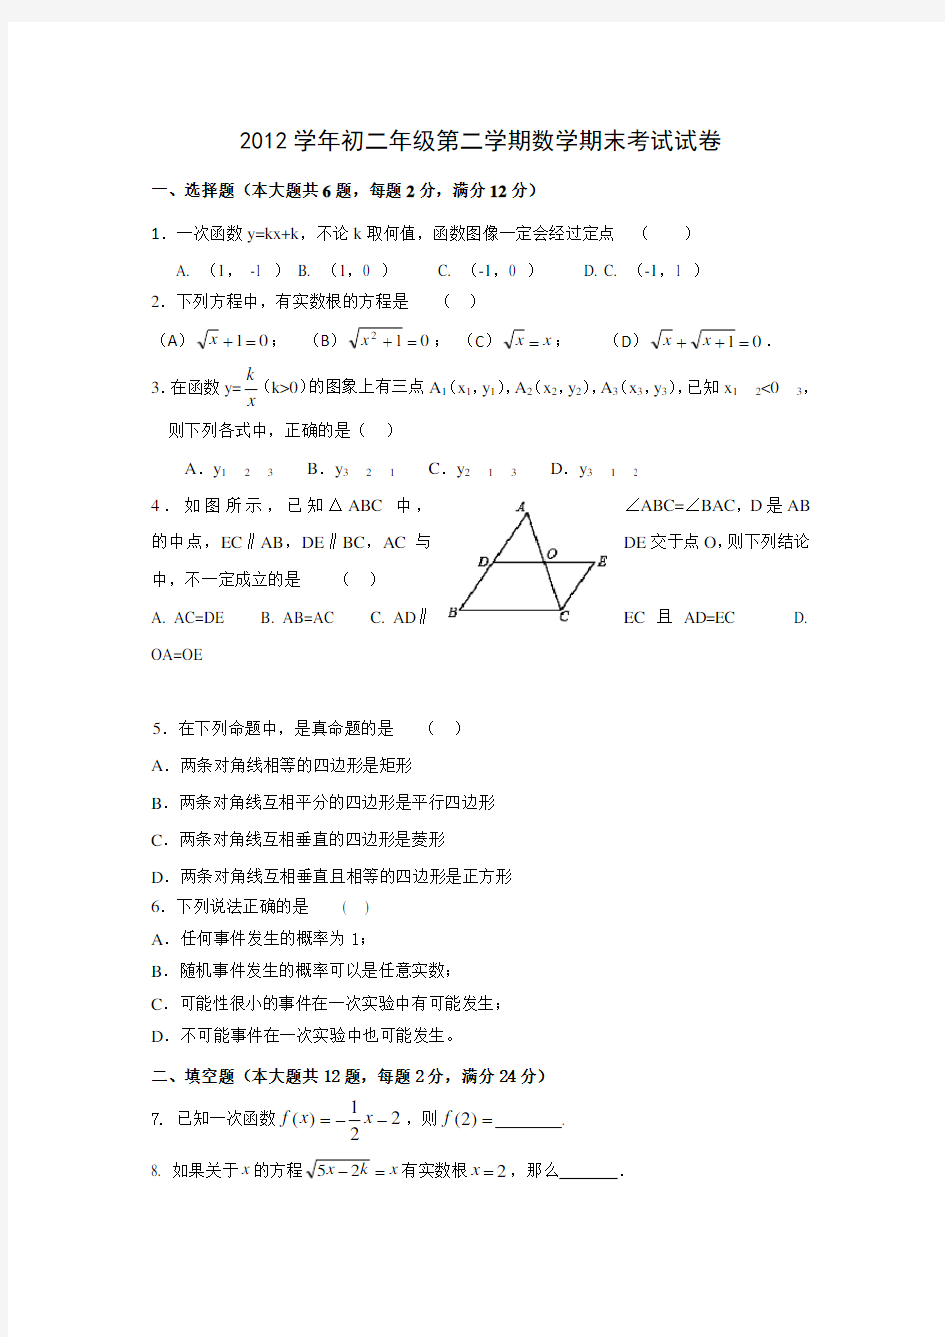 上海八年级第二学期数学期末考试试卷(含答案)